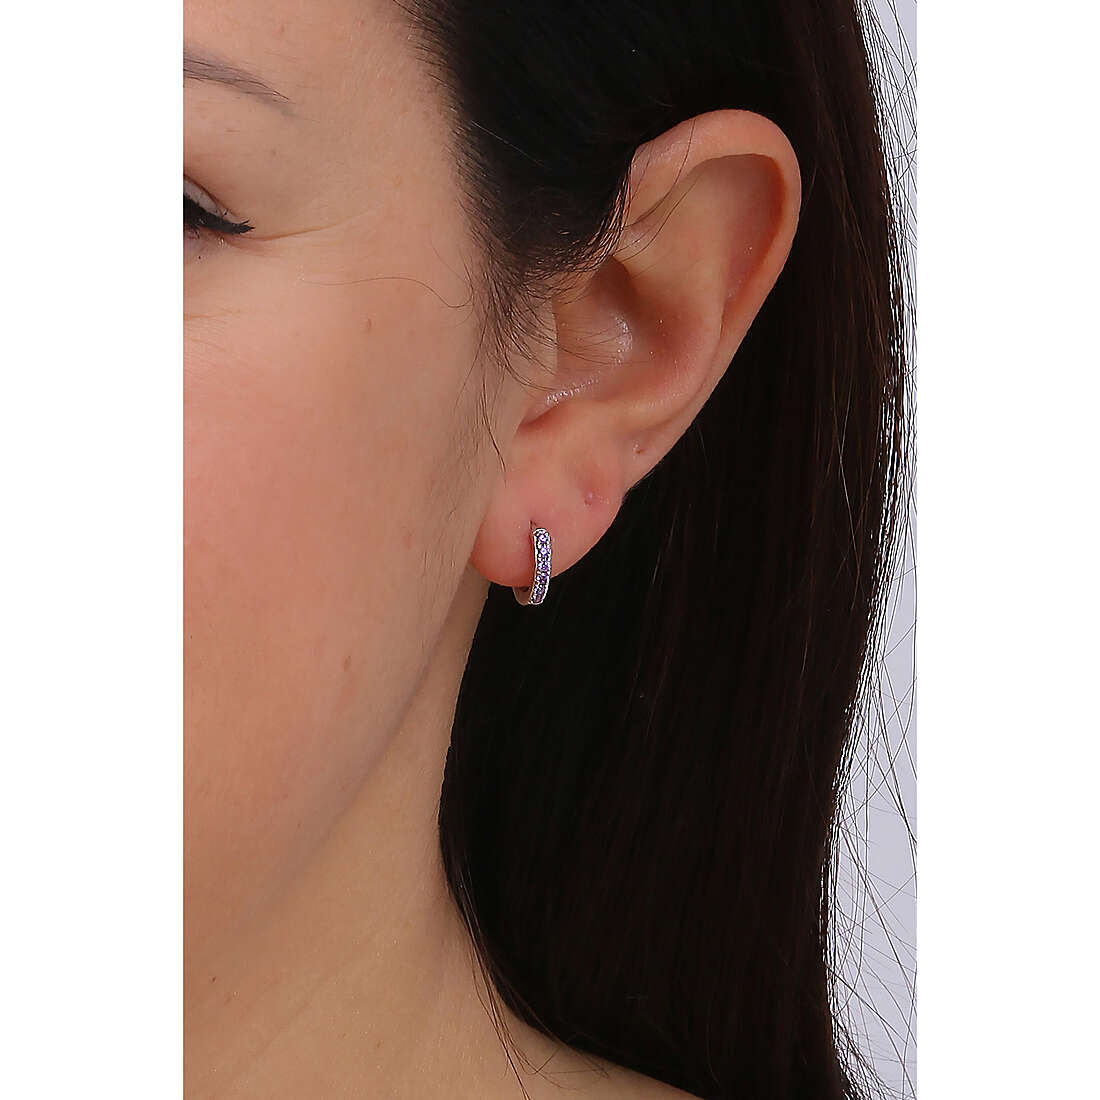 Brosway earrings Fancy woman FMP85 wearing